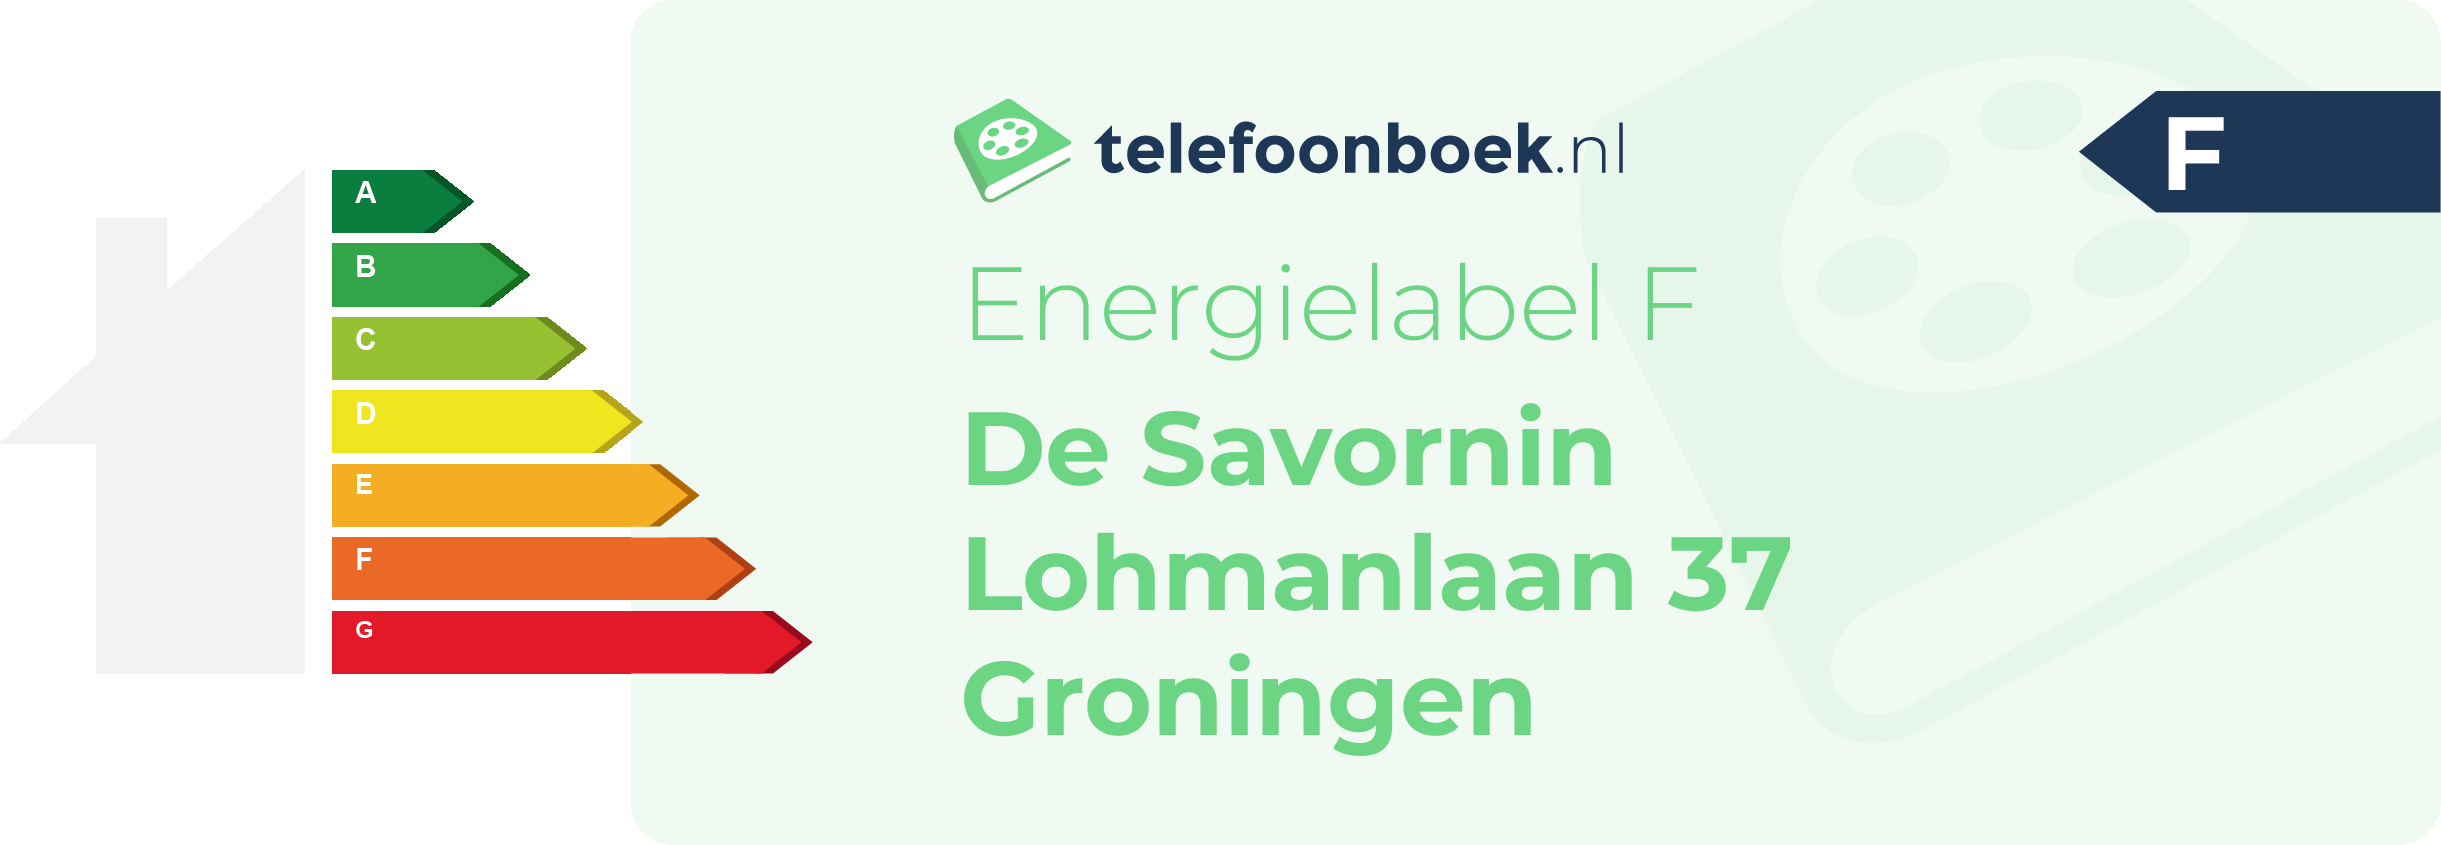 Energielabel De Savornin Lohmanlaan 37 Groningen